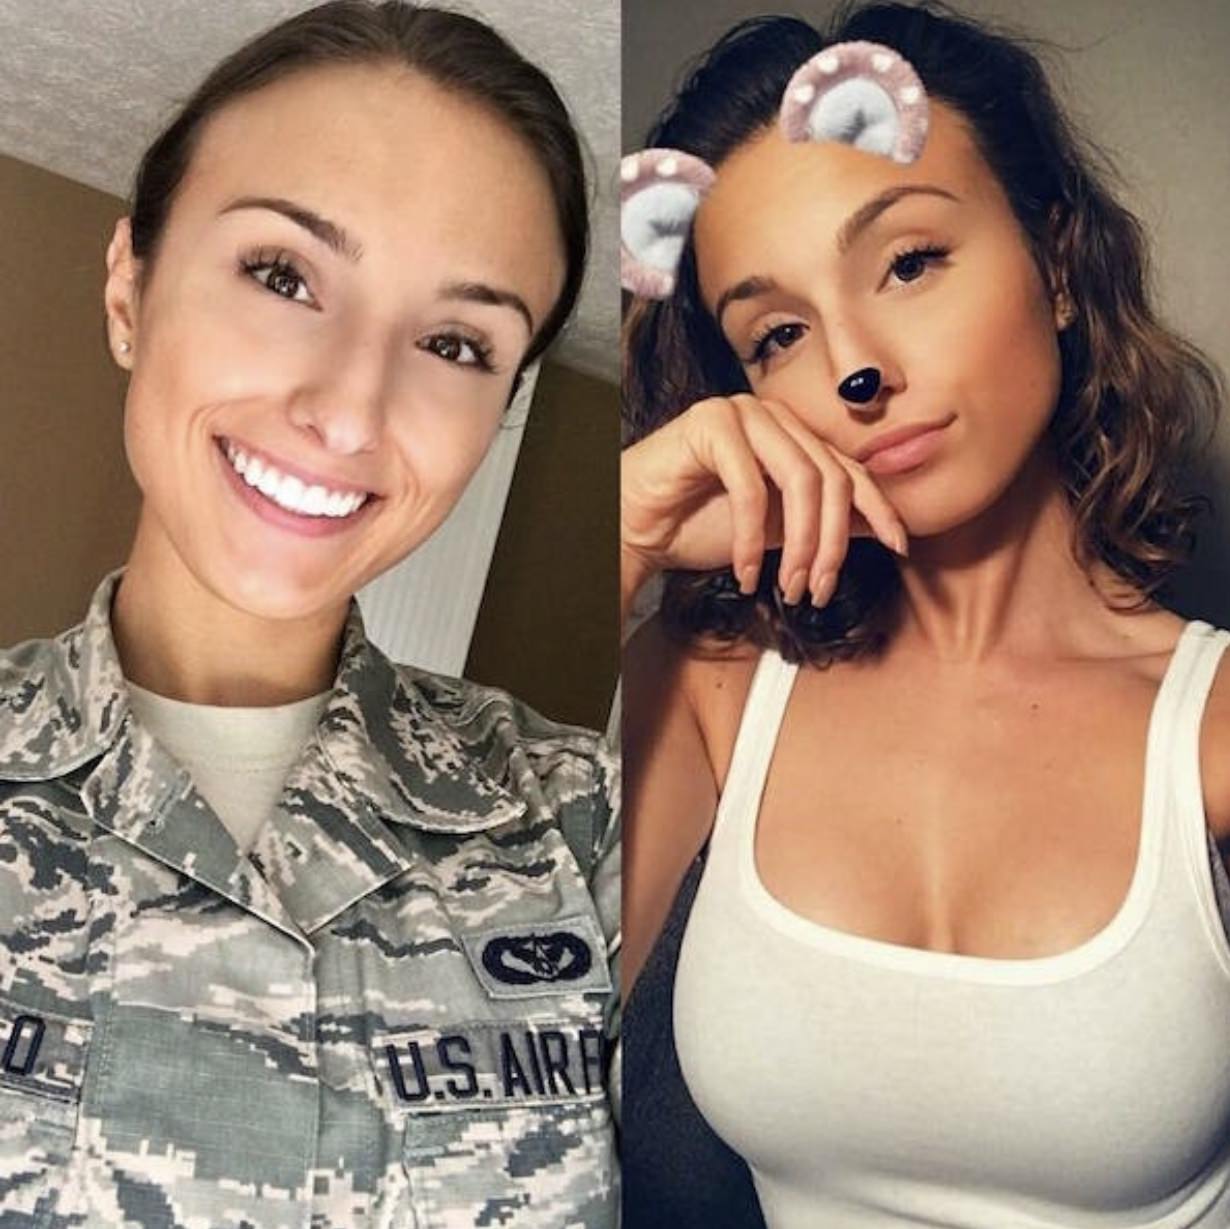 hot air force women